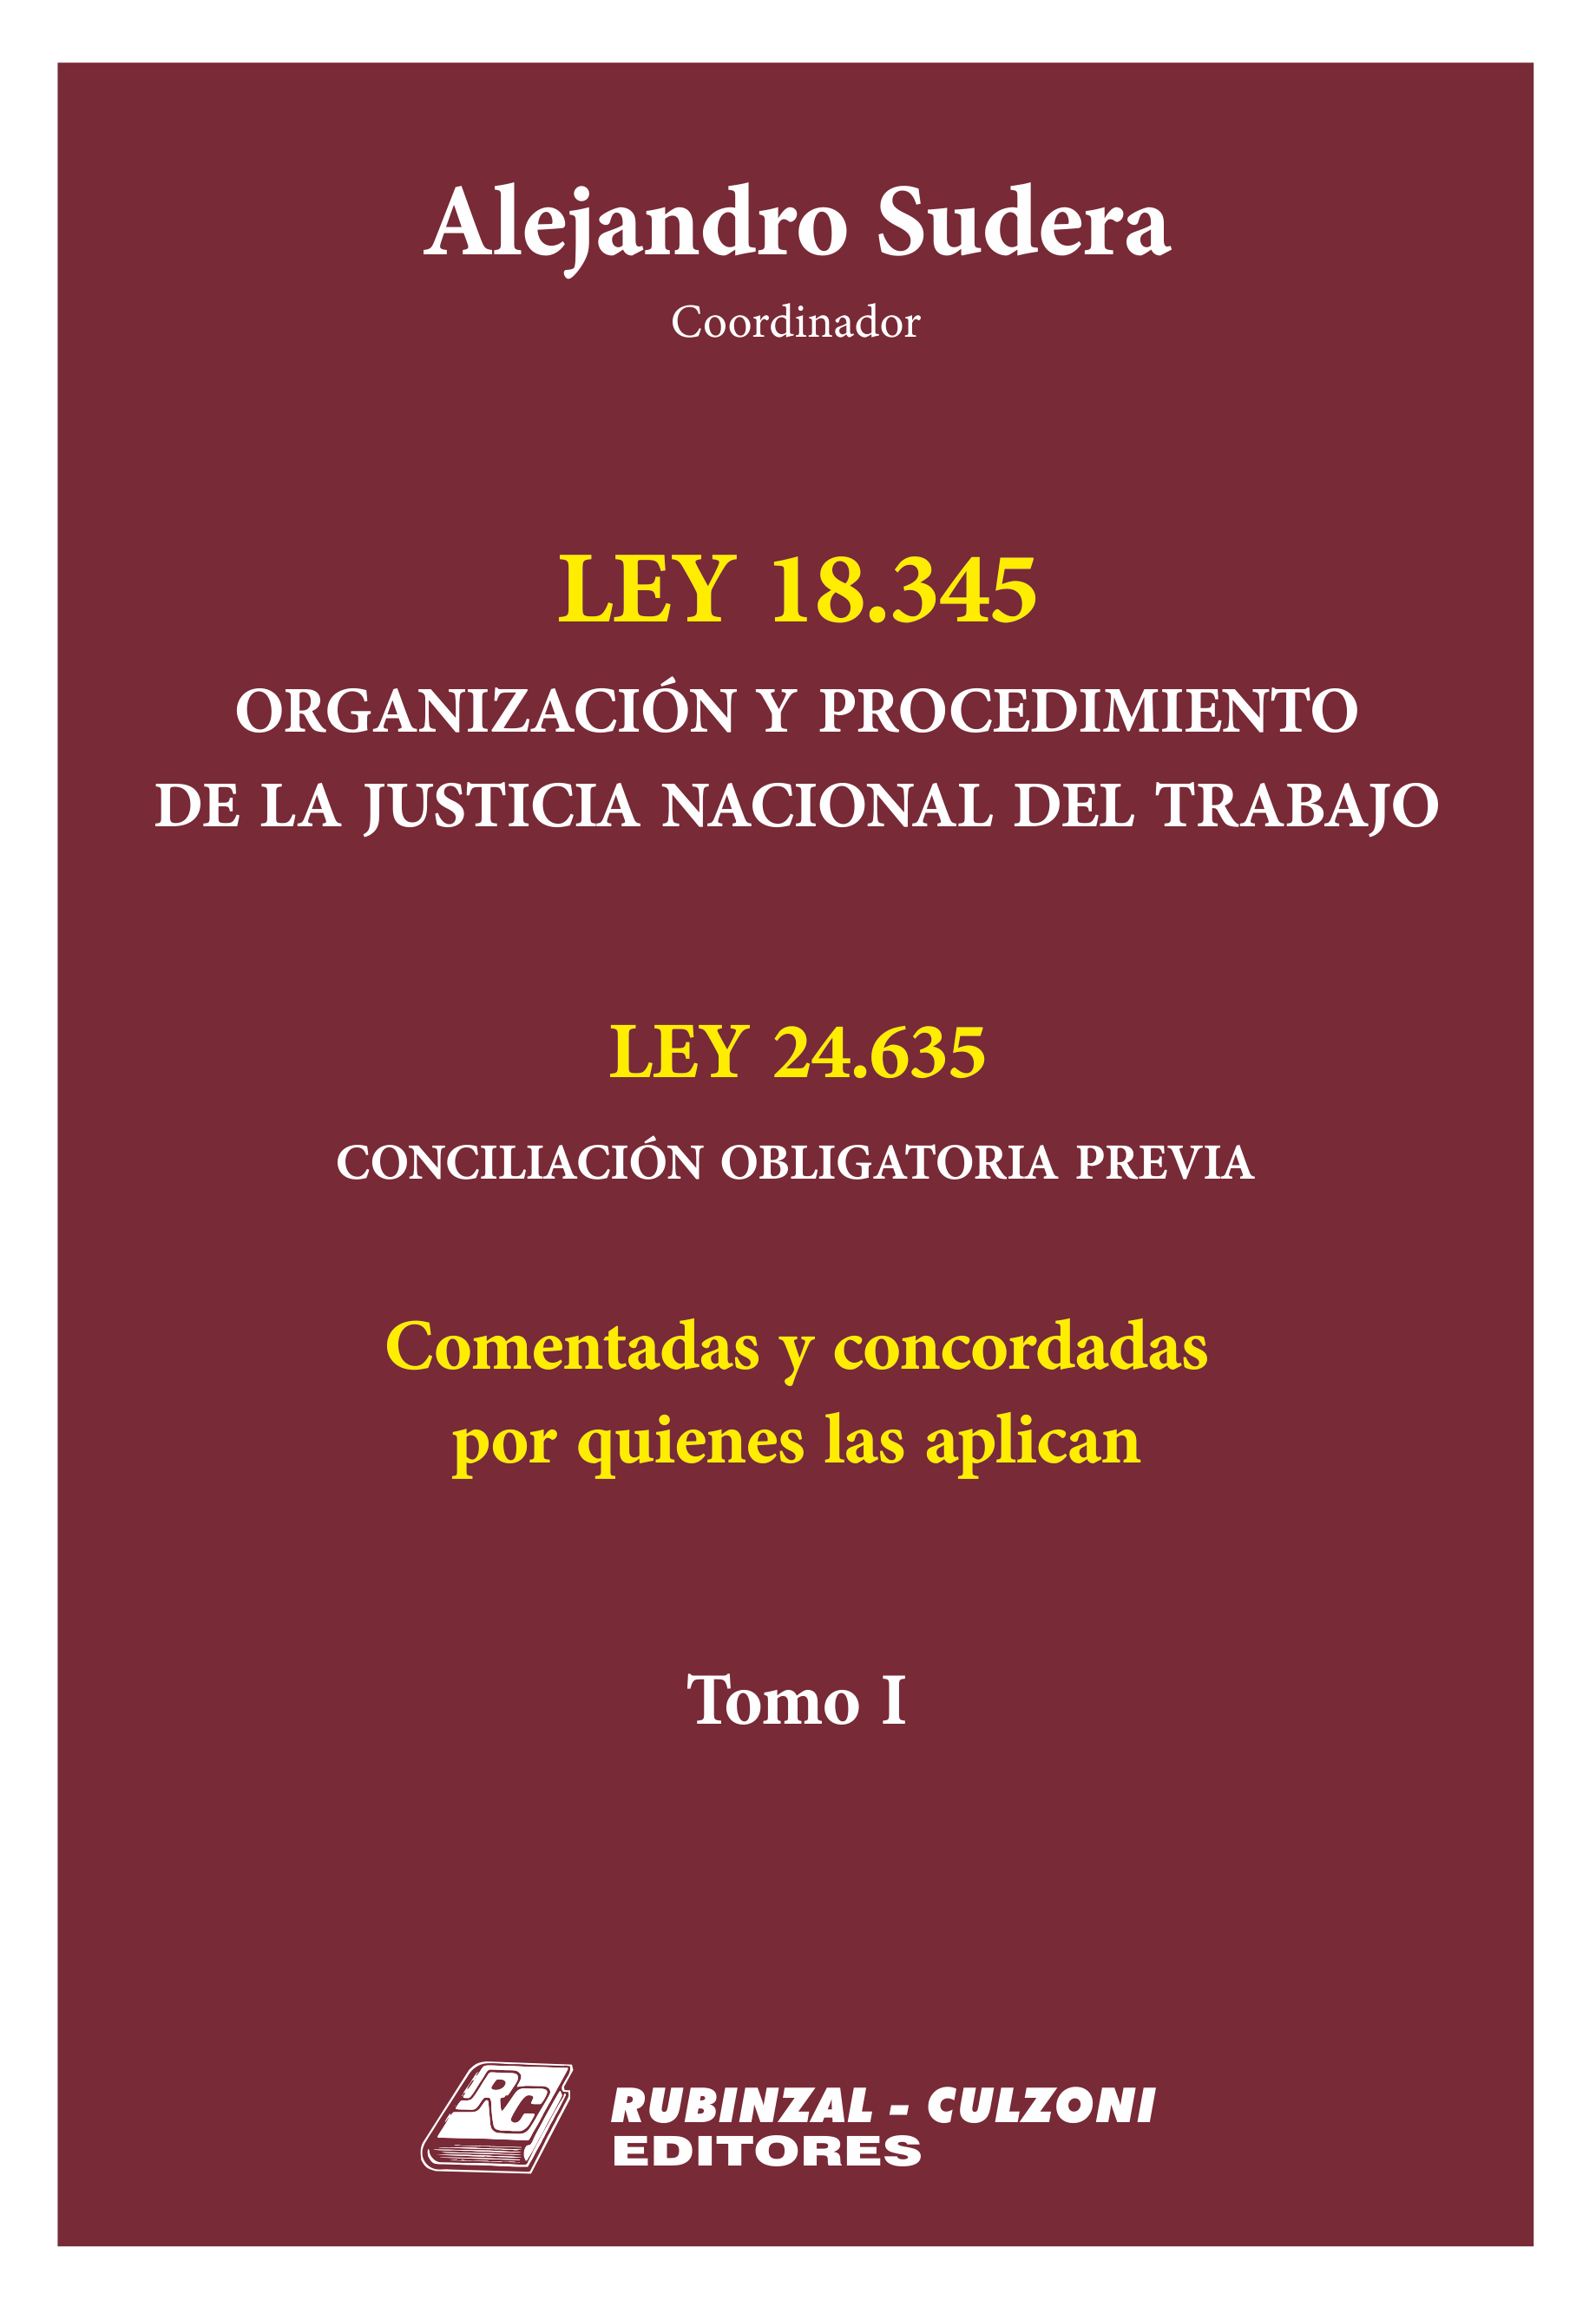 Ley 18345 Organización y Procedimiento de la Justicia Nacional del Trabajo. Ley 24.635 Conciliación obligatoria previa. - Tomo I.